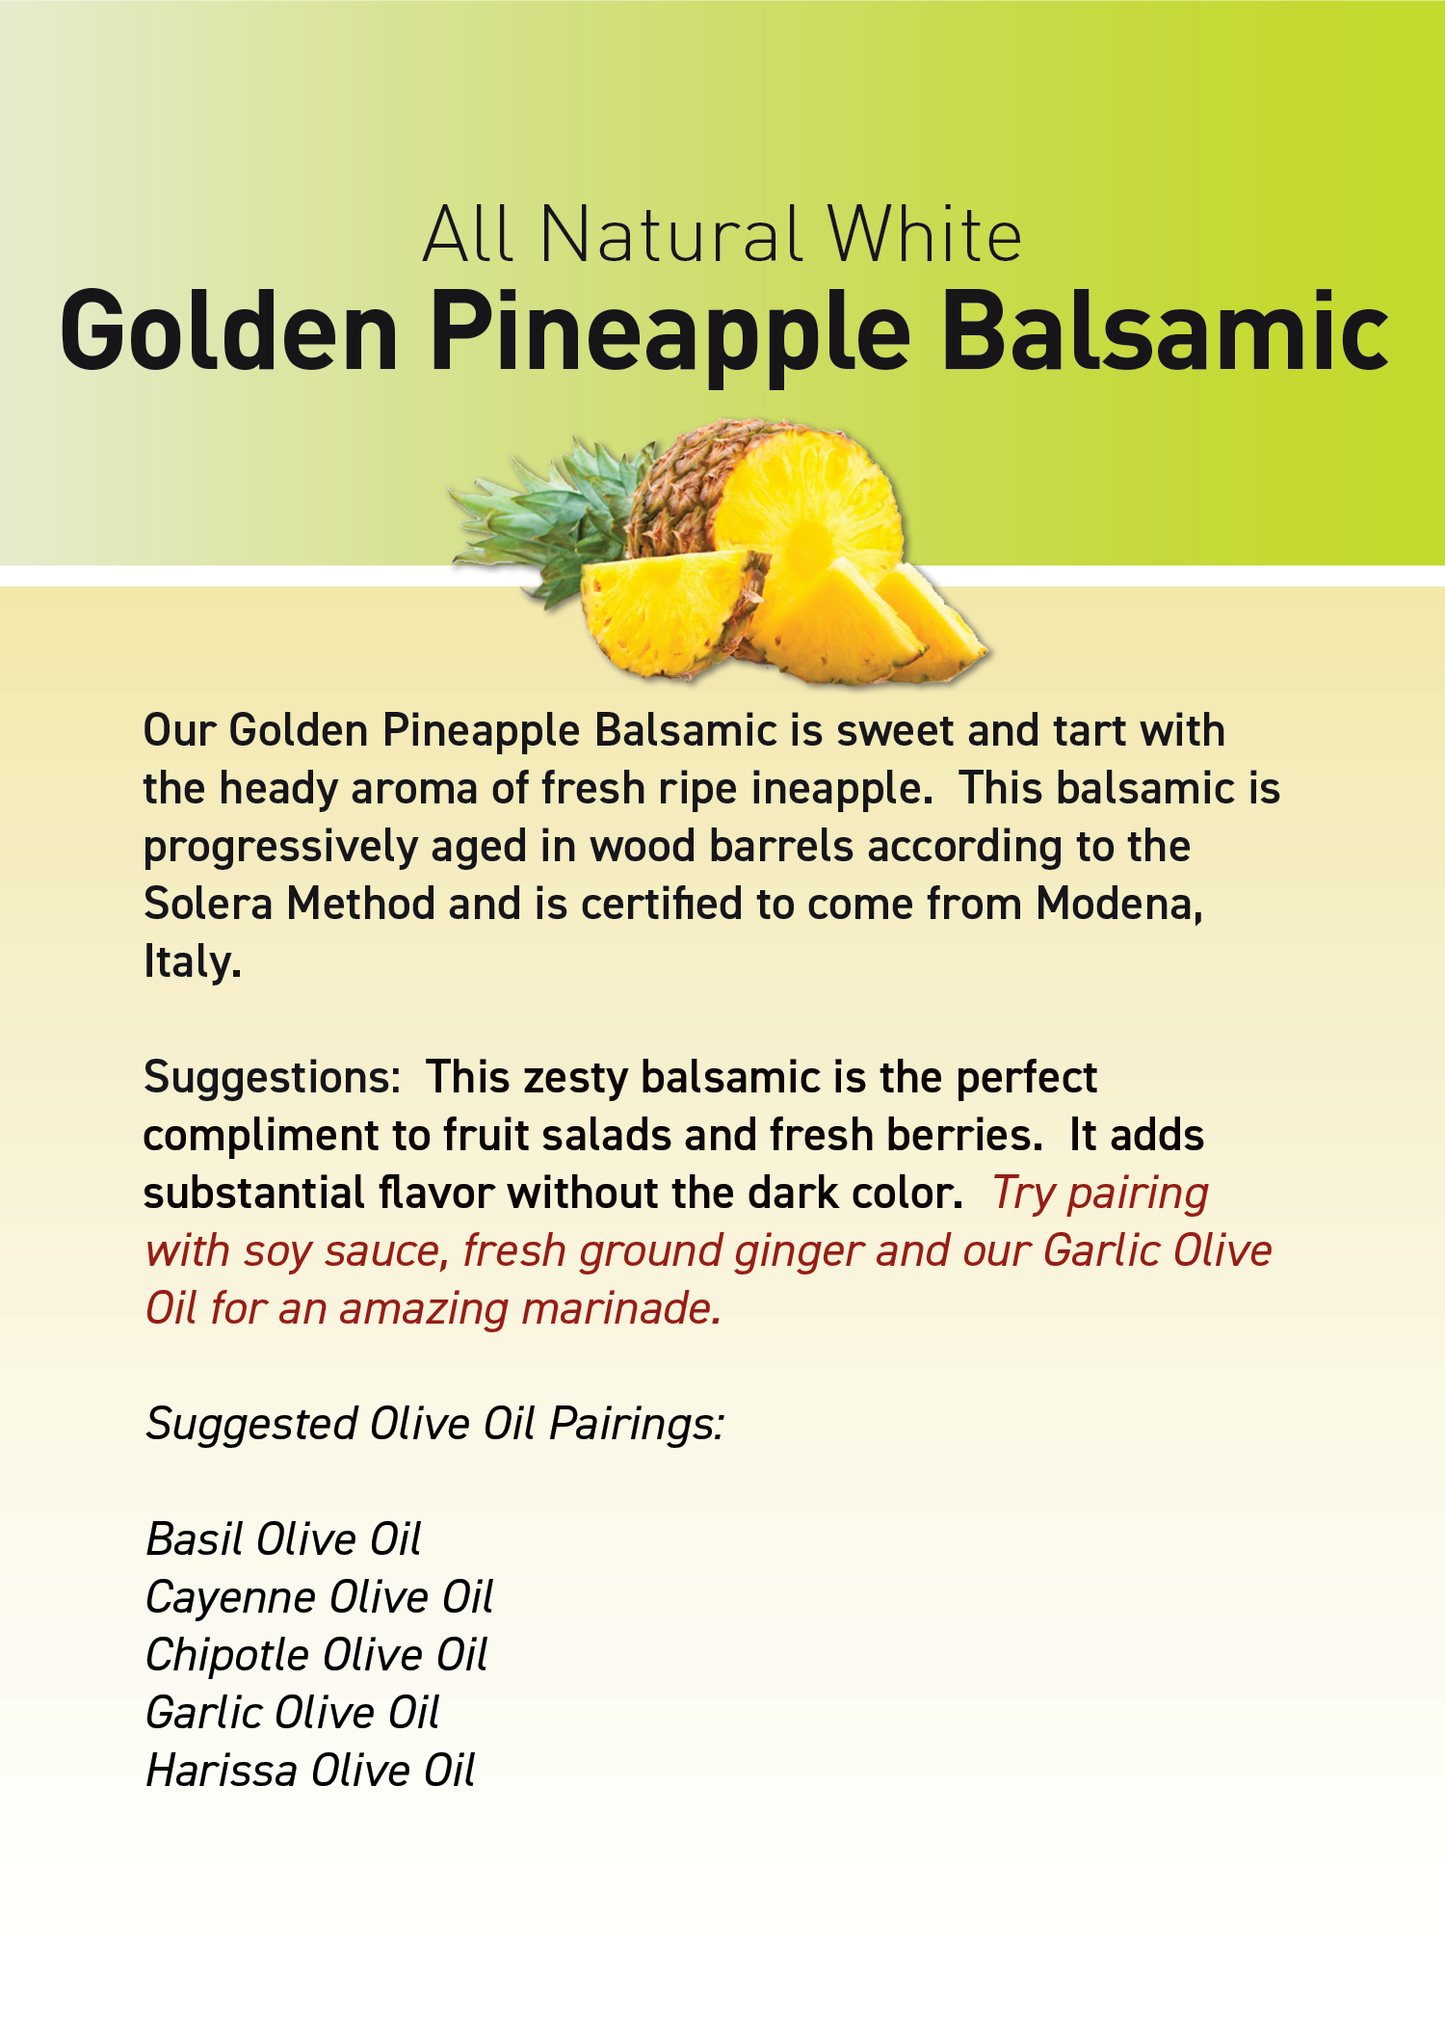 Golden Pineapple Balsamic